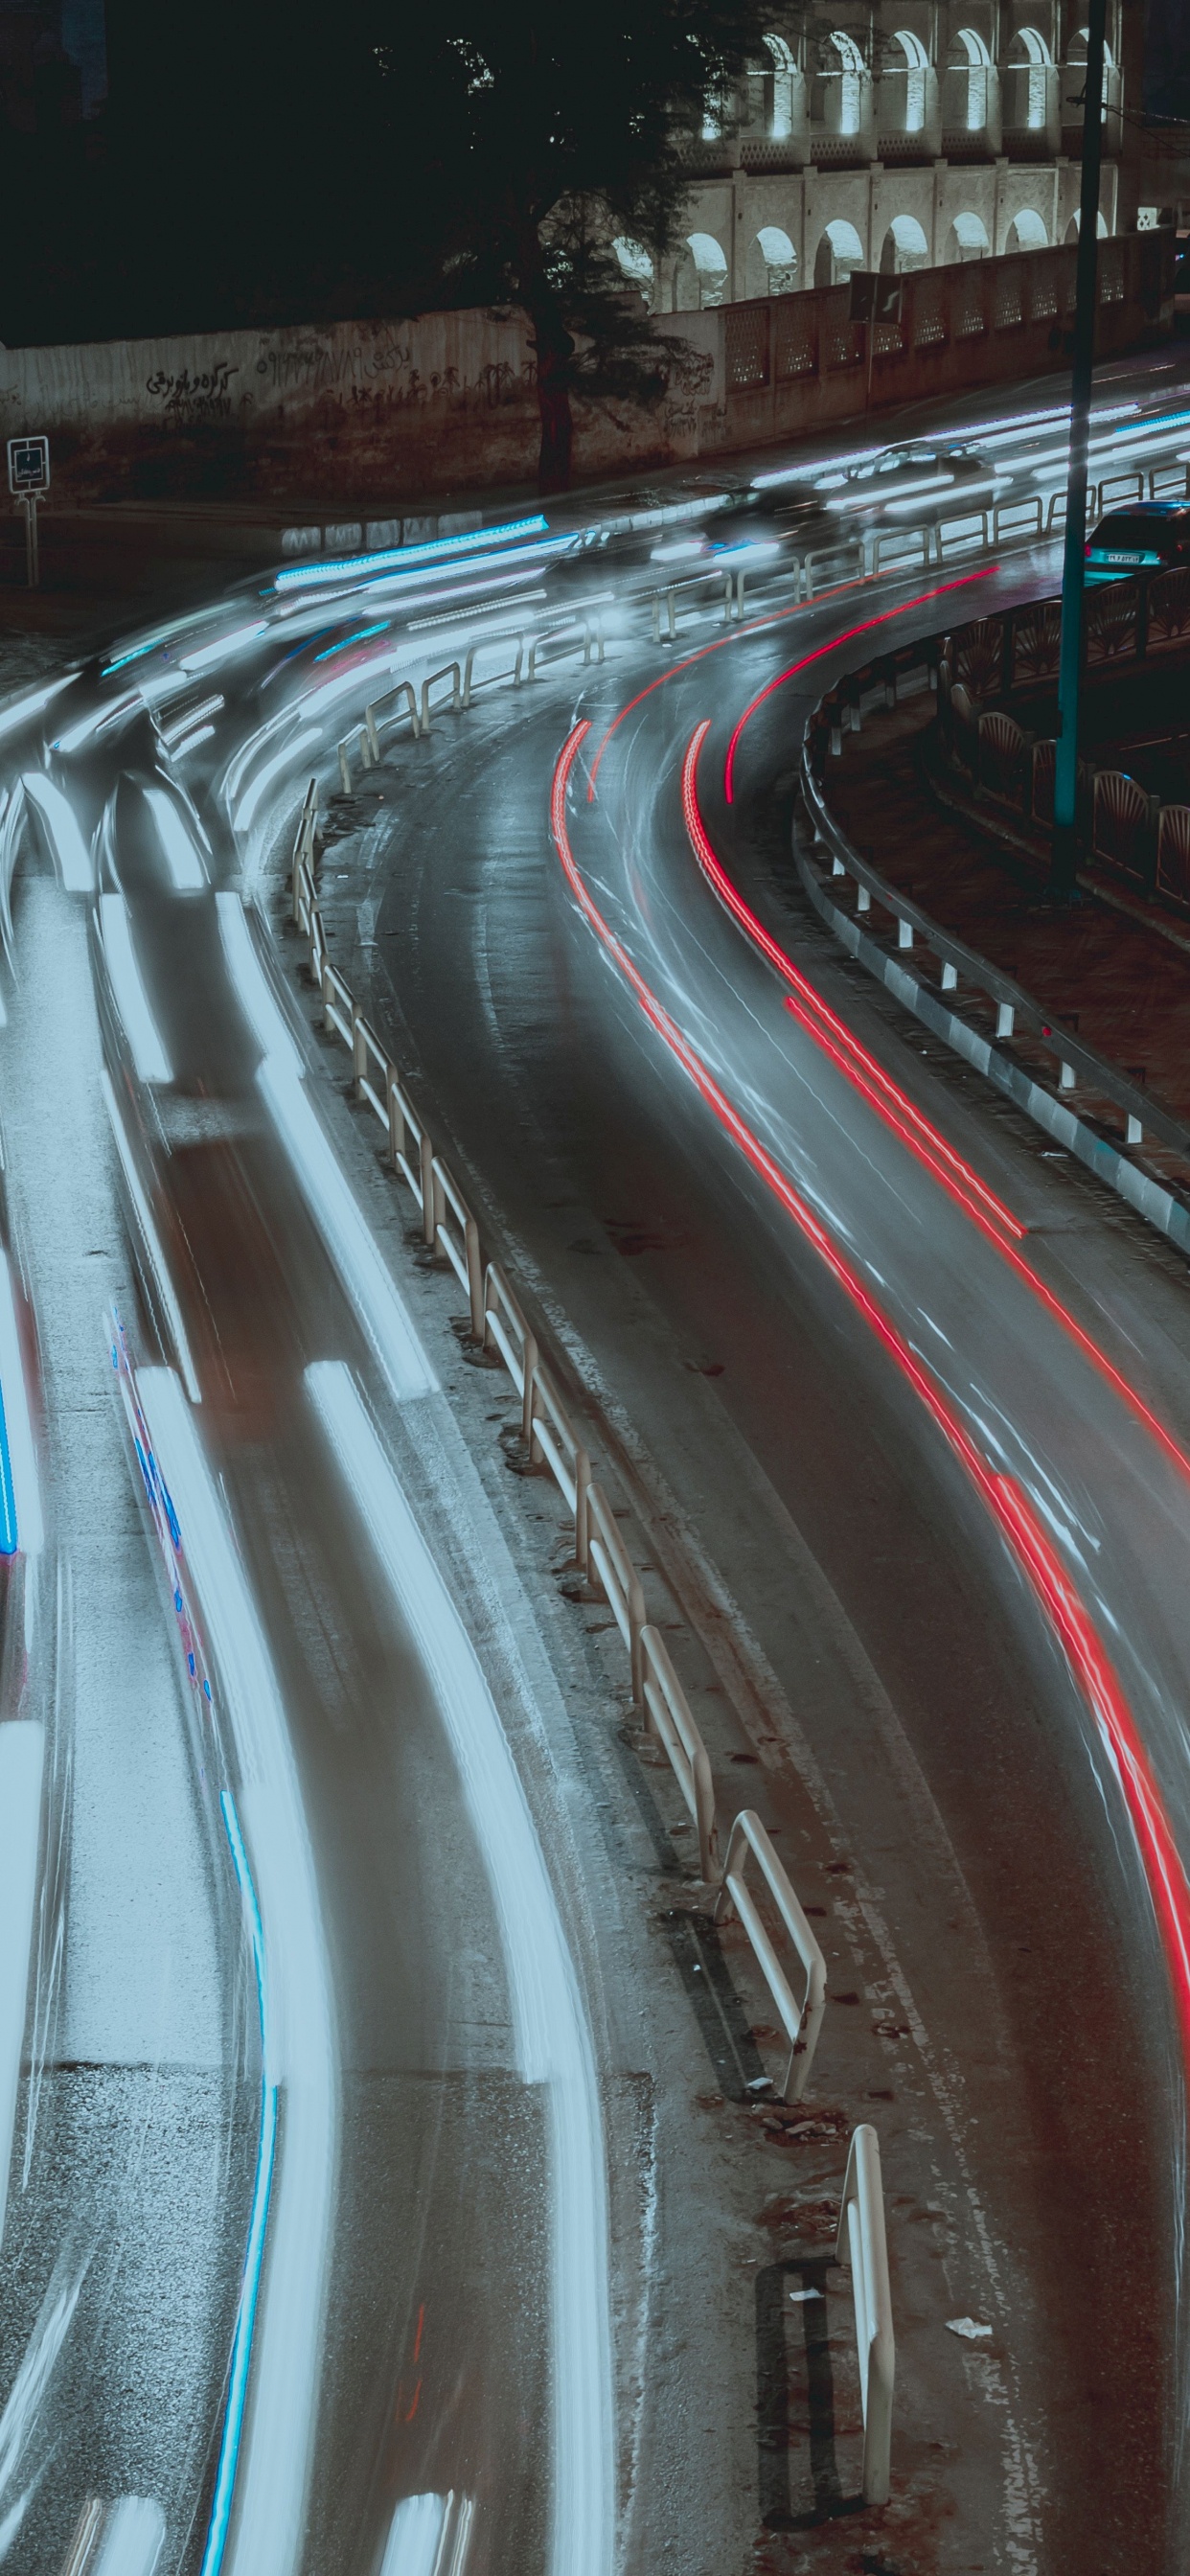 Fotografía de Lapso de Tiempo de Automóviles en la Carretera Durante la Noche. Wallpaper in 1242x2688 Resolution